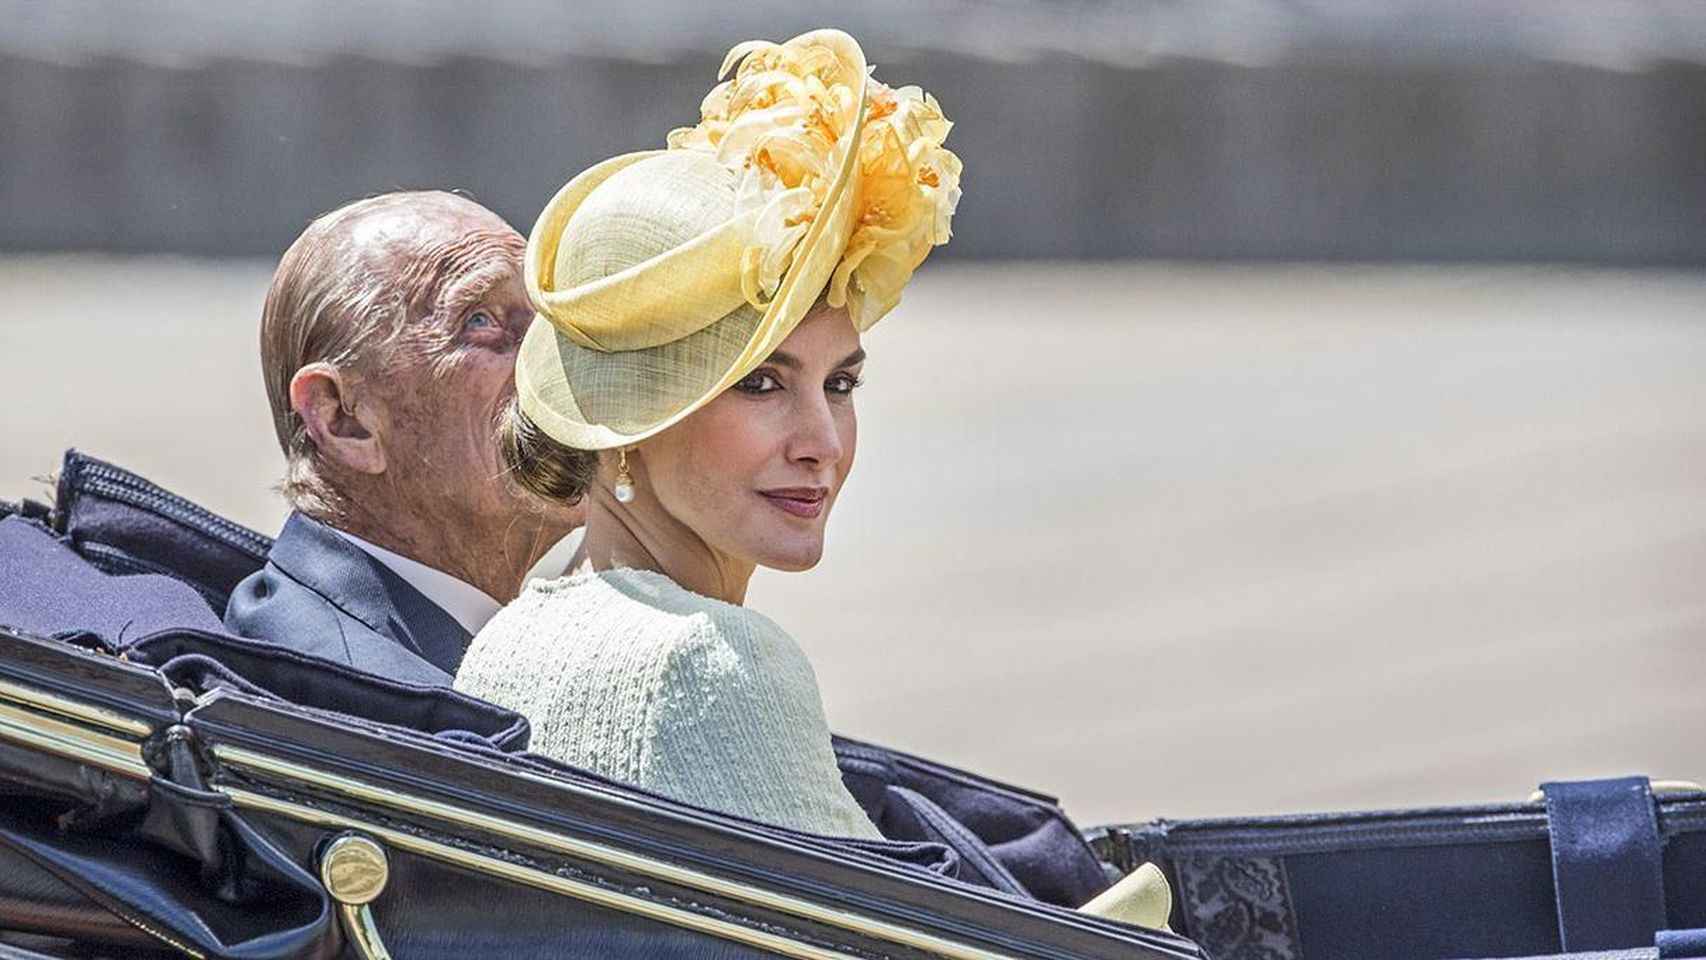 Le reina Letizia, con su imponente look en Reino Unido junto a Felipe de Edimburgo.